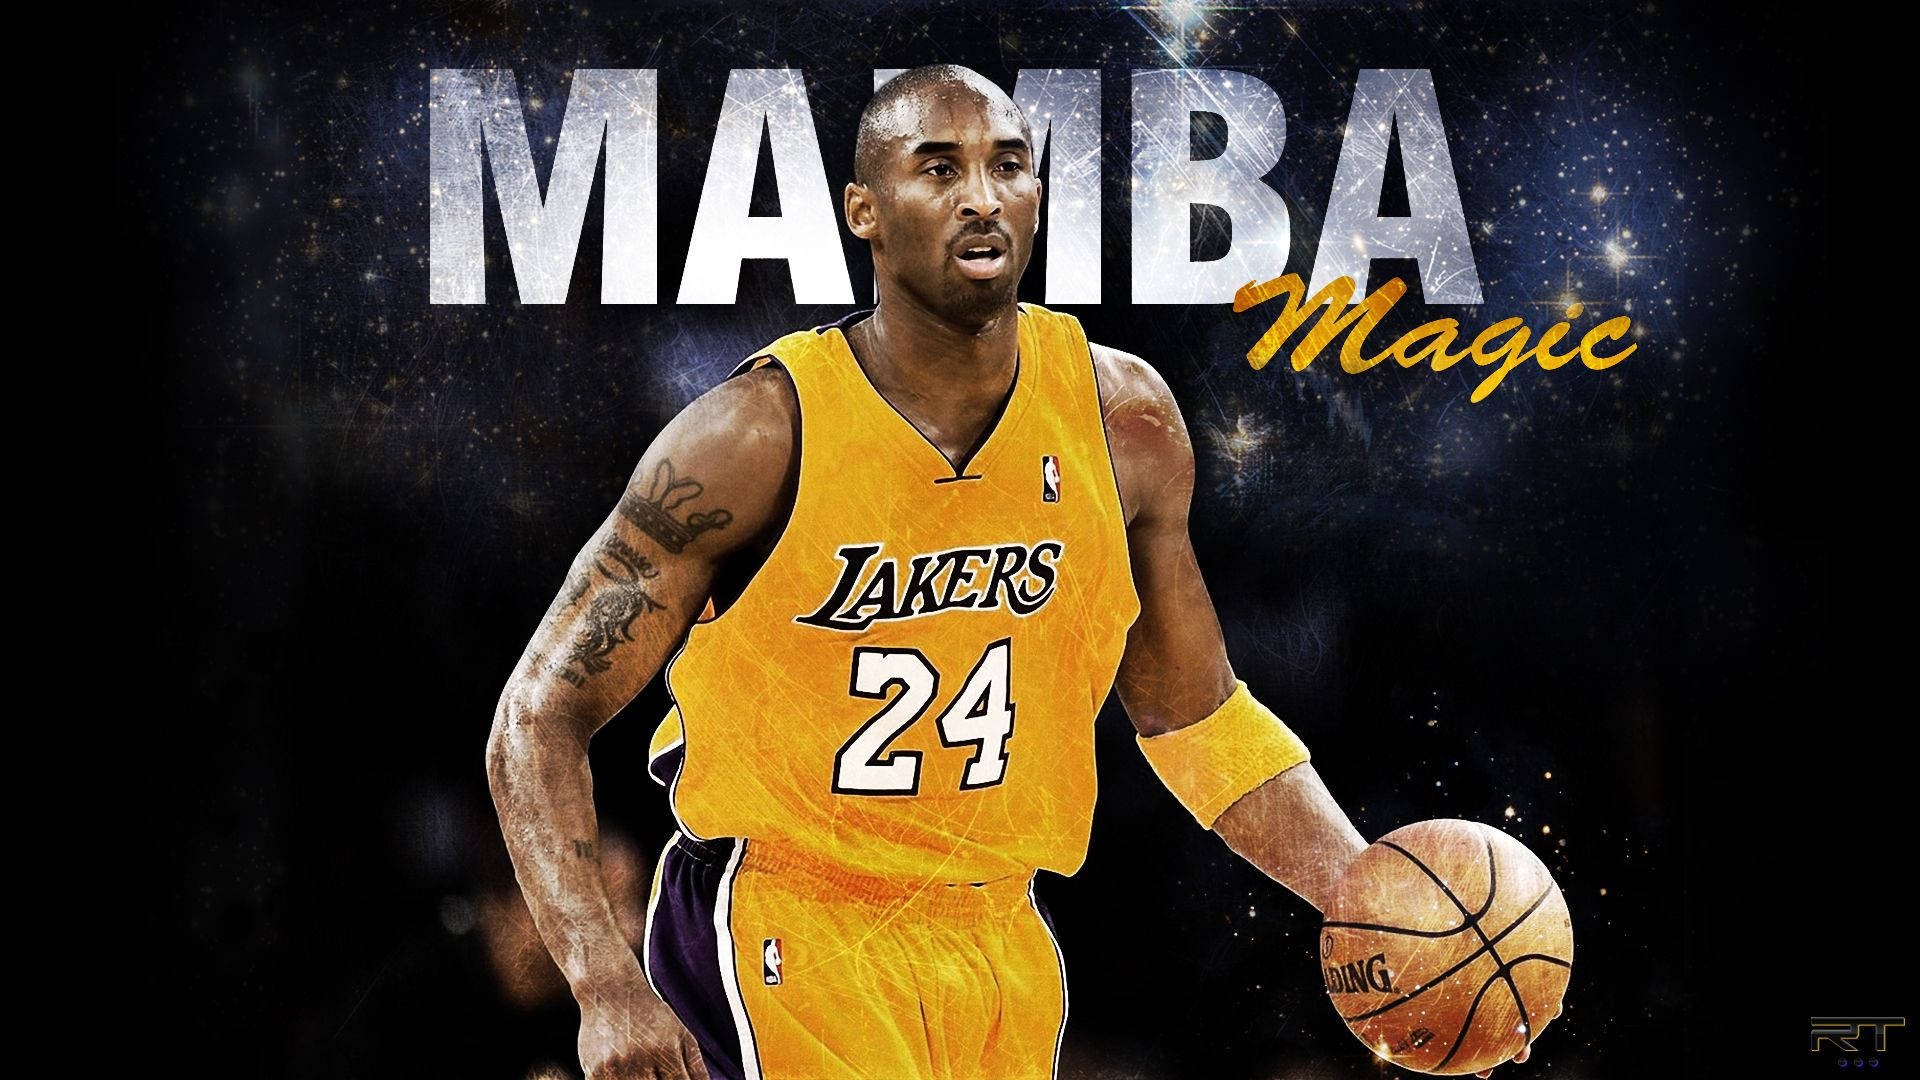 "Mamba Magic" - Kobe Bryant Wallpaper